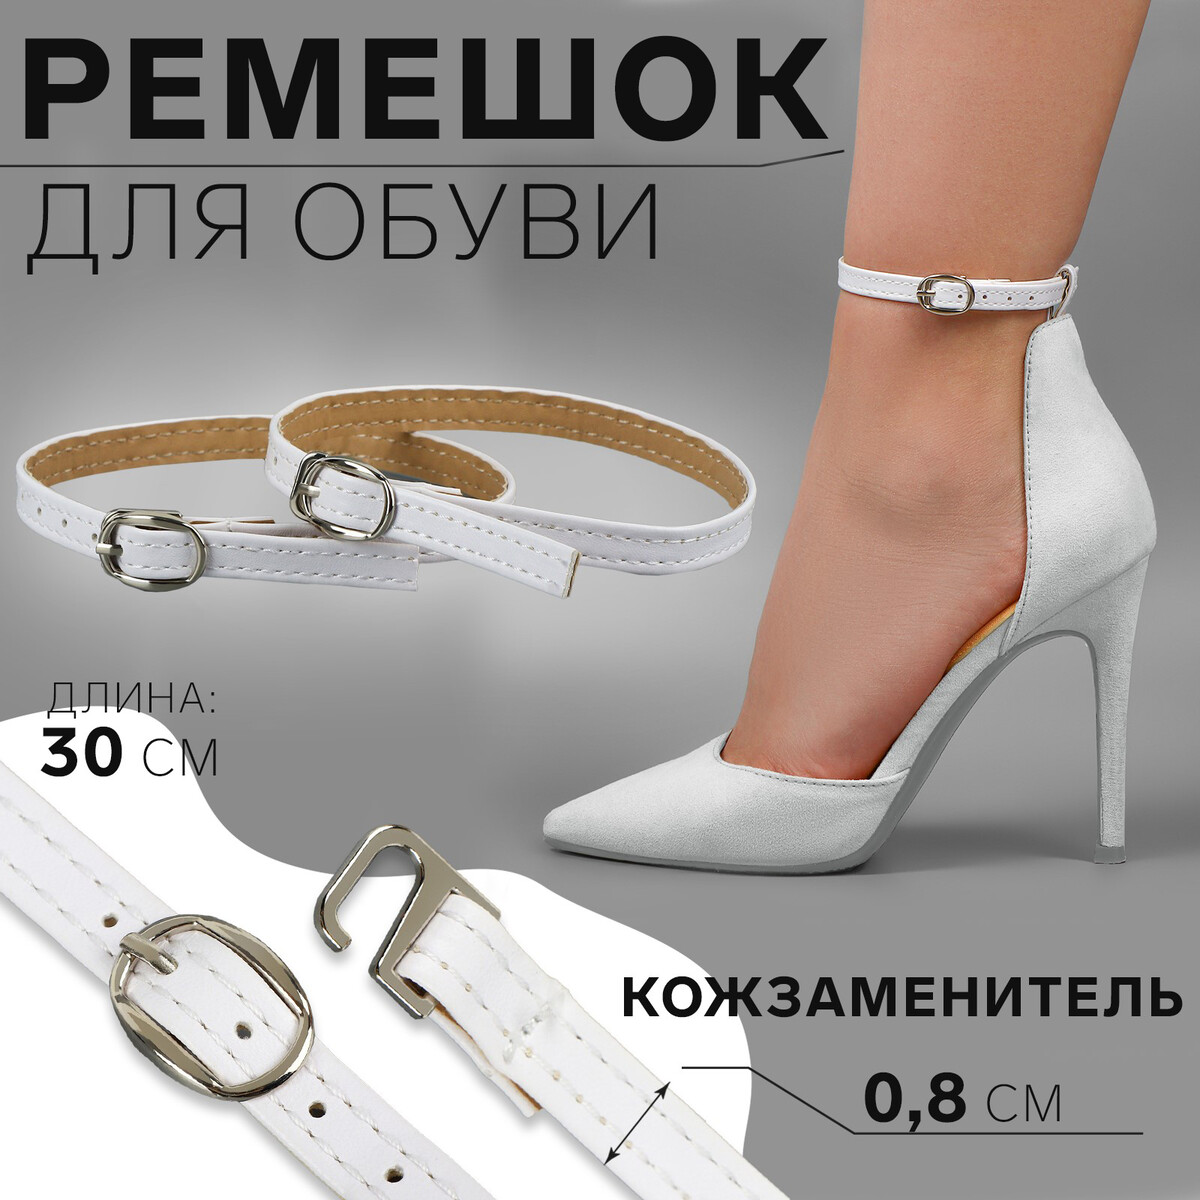 Ремешок для обуви, искусственная кожа, 30 см, 8 мм, 2 шт, цвет белый ремешок для обуви искусственная кожа 30 см 8 мм 2 шт белый